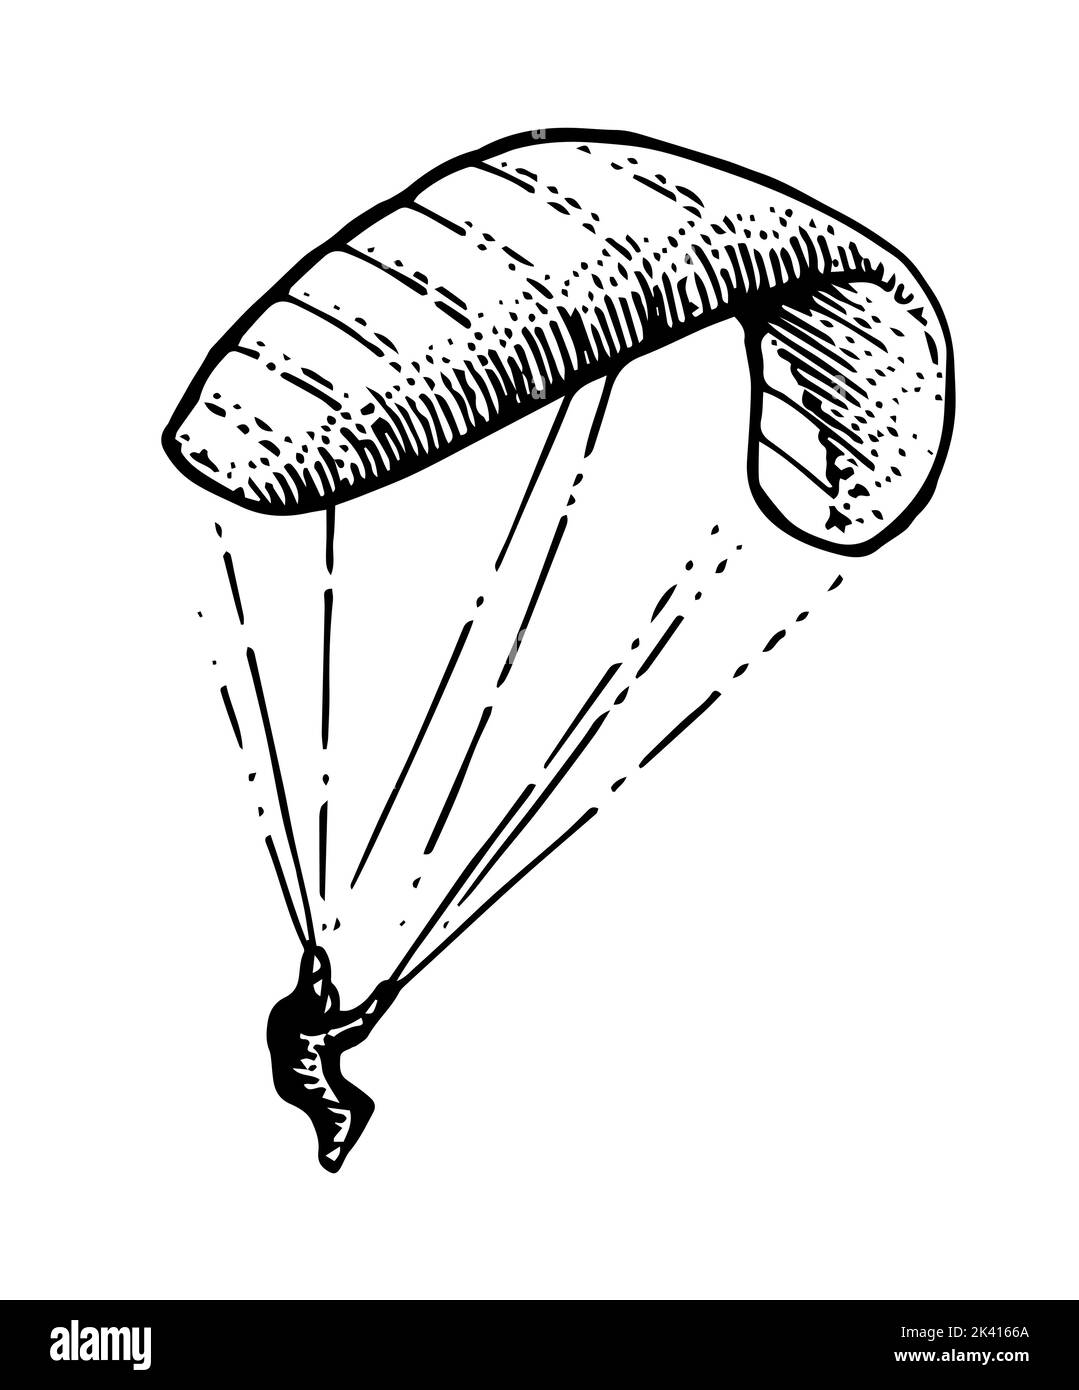 Il paracadutista discende. Parapendio paracadute. Sport estremi. Volo ad alta quota controllato. Schizzo del contorno disegnato a mano. Isolato su bianco Illustrazione Vettoriale